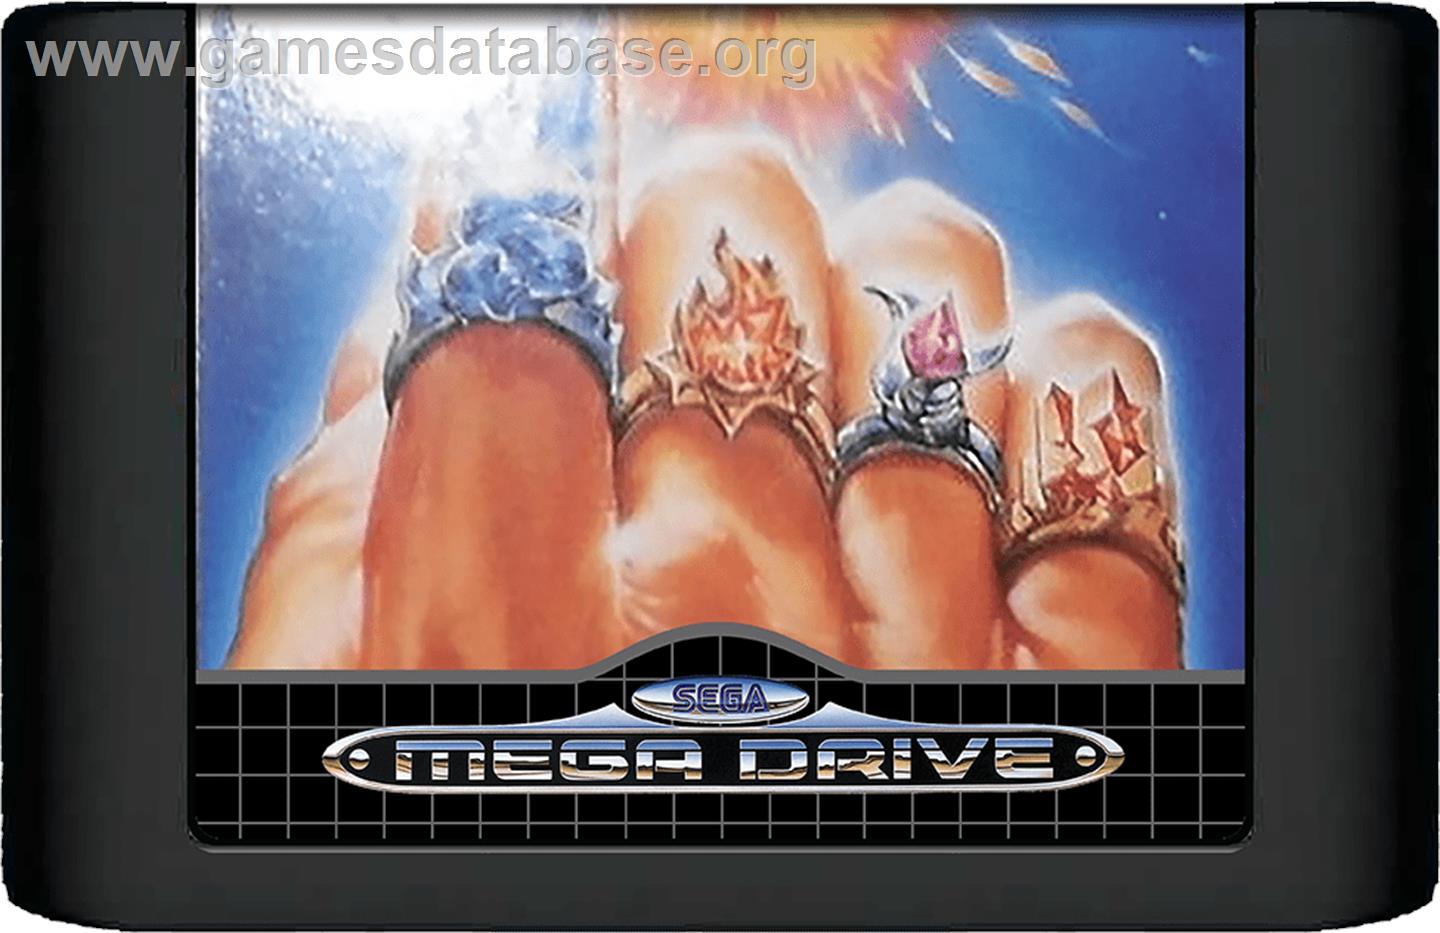 Jewel Master - Sega Genesis - Artwork - Cartridge